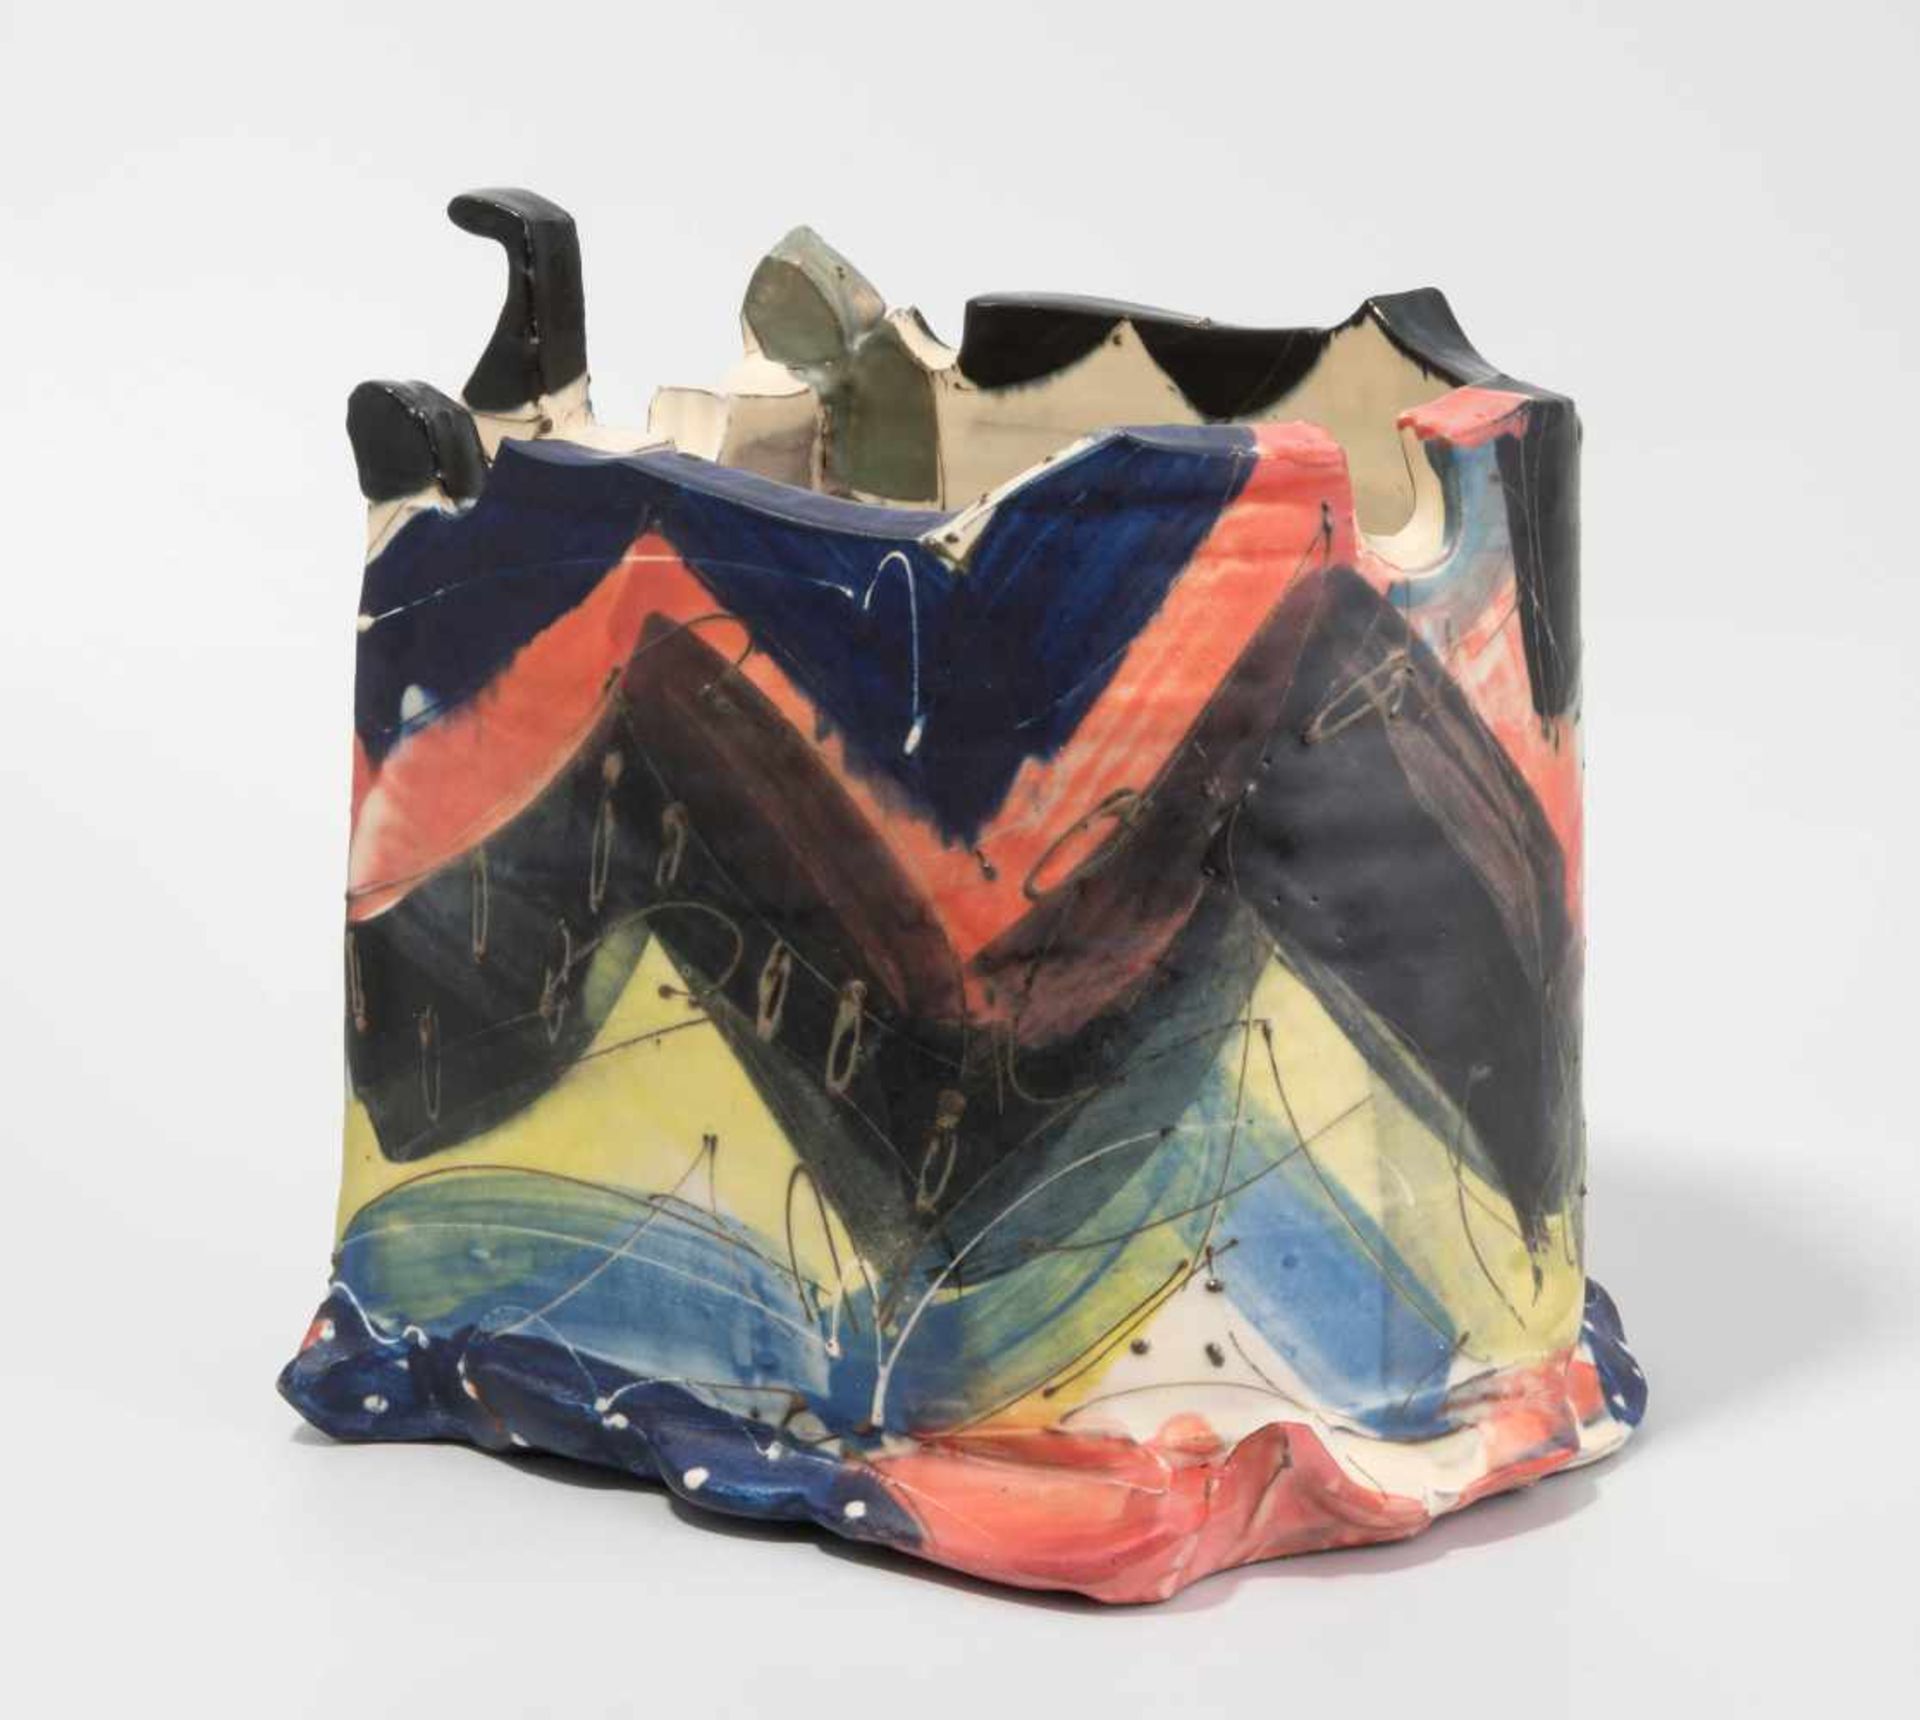 Vase, David Miller (England 1942–2008) "Bagnoire". Keramik, bemalt. H 19 cm. - Kleine Reparatur.